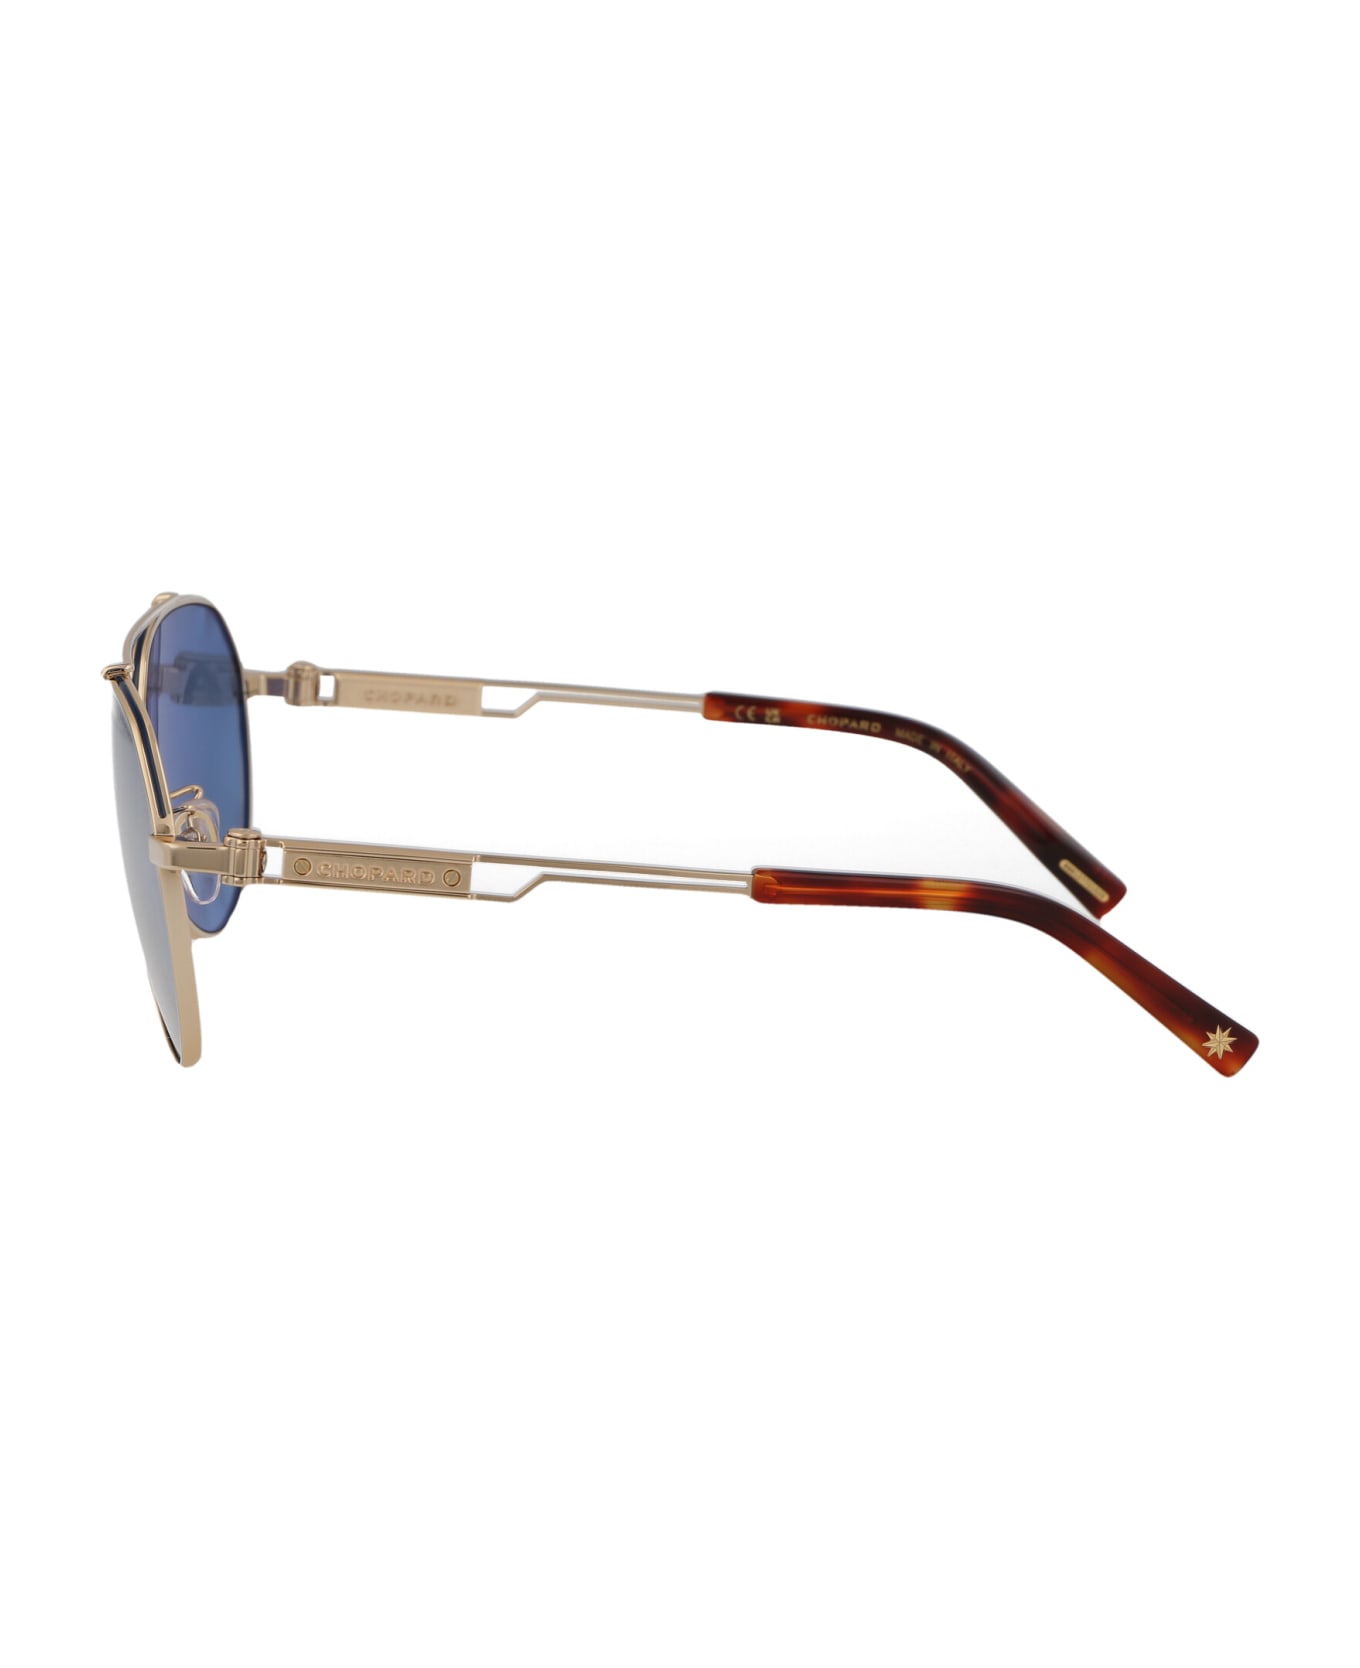 Chopard Schg63 Sunglasses - 300P GOLD